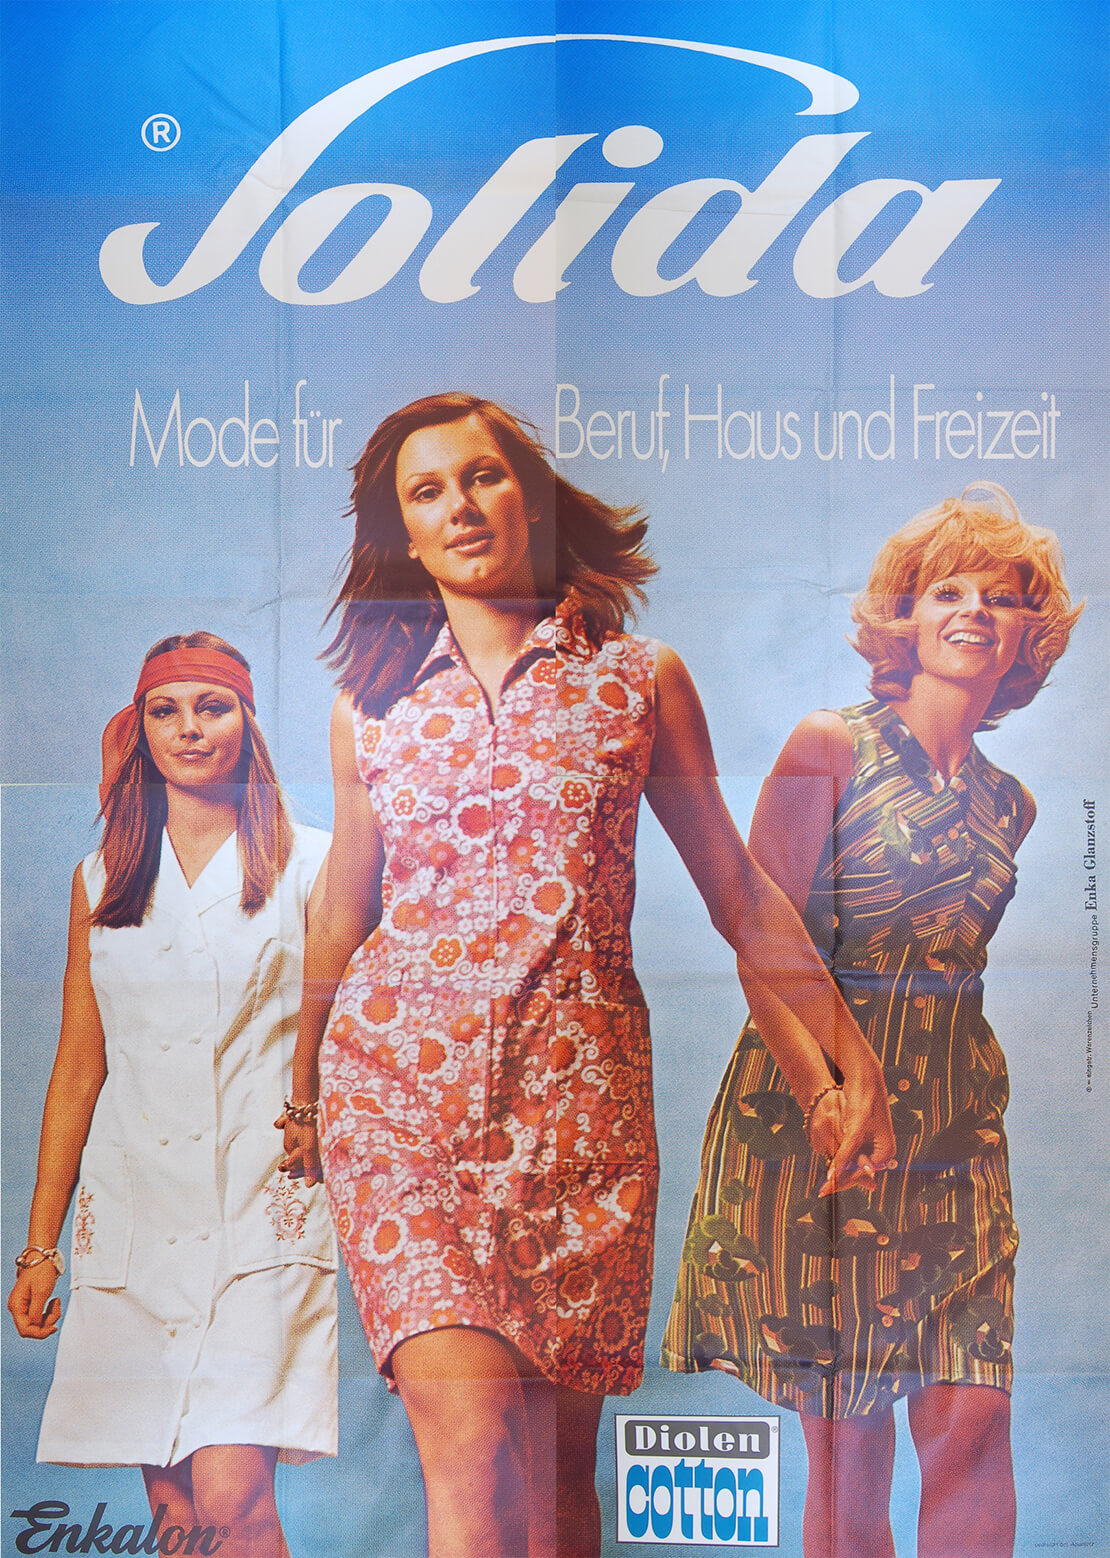 Solida - Mode für Beruf, Haus und Freizeit, Plakat (4 Teile), 1972, © Plakatsammlung Wienbibliothek 